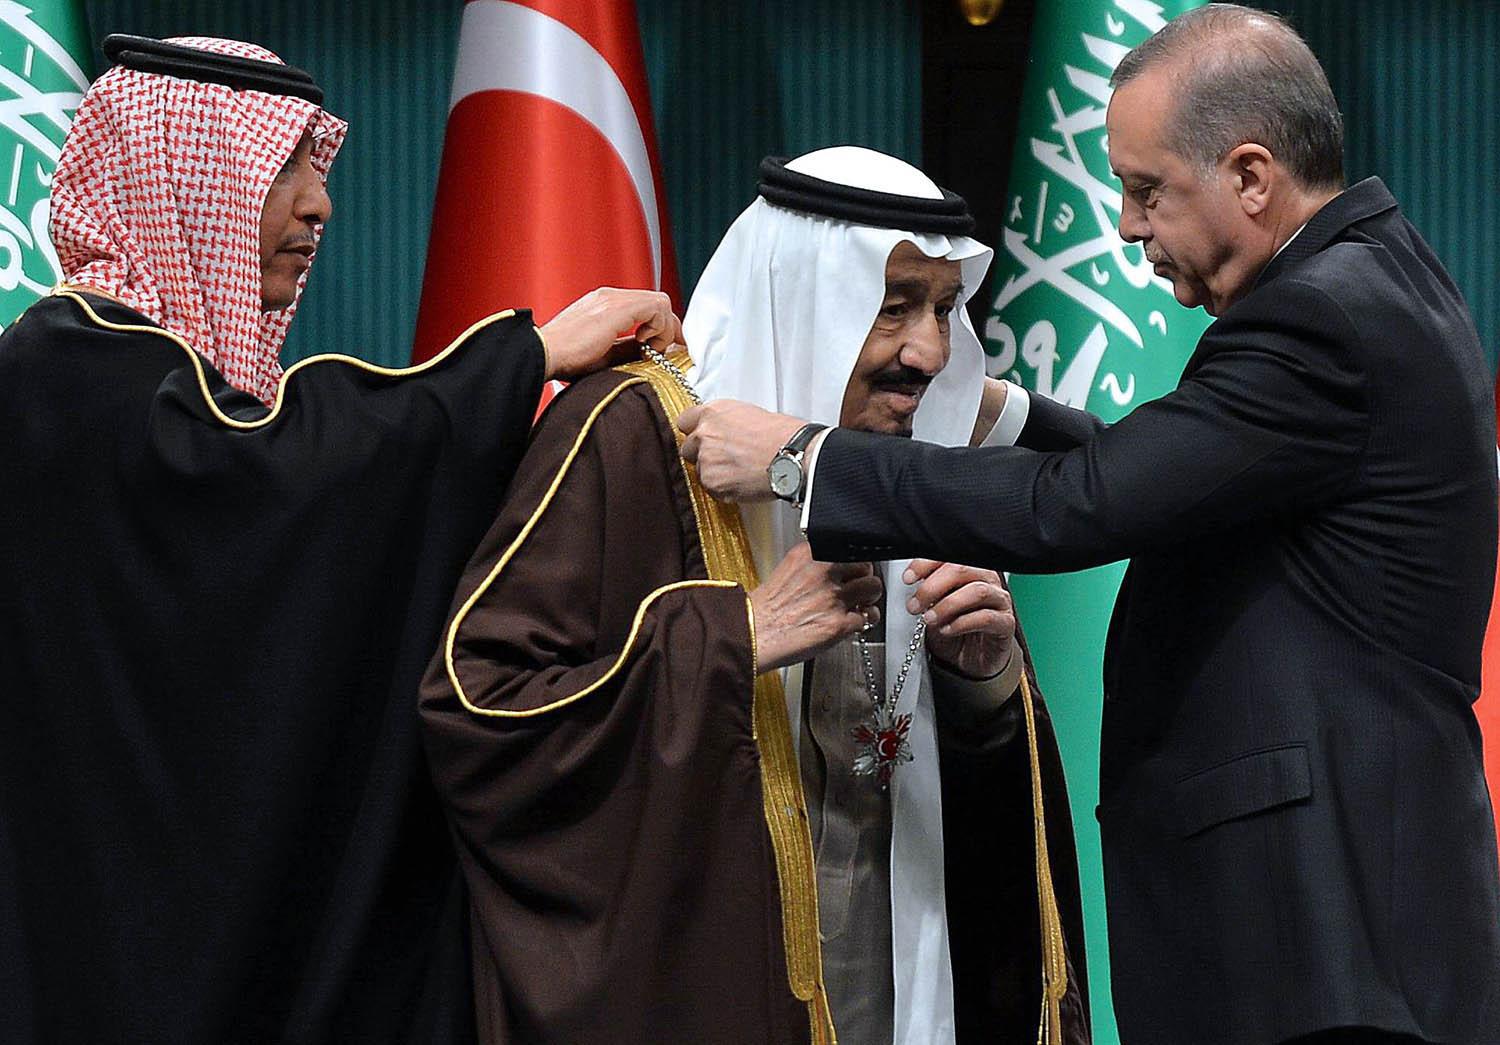 الرئيس التركي رجب طيب اردوغان والعاهل السعودي الملك سلمان بن عبدالعزيز ال سعود